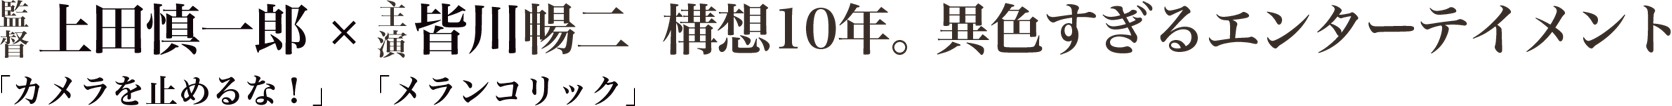 監督 上田慎一郎「カメラを止めるな！」 × 主演 皆川暢二「メランコリック」 構想10年。異色すぎるエンターテインメント